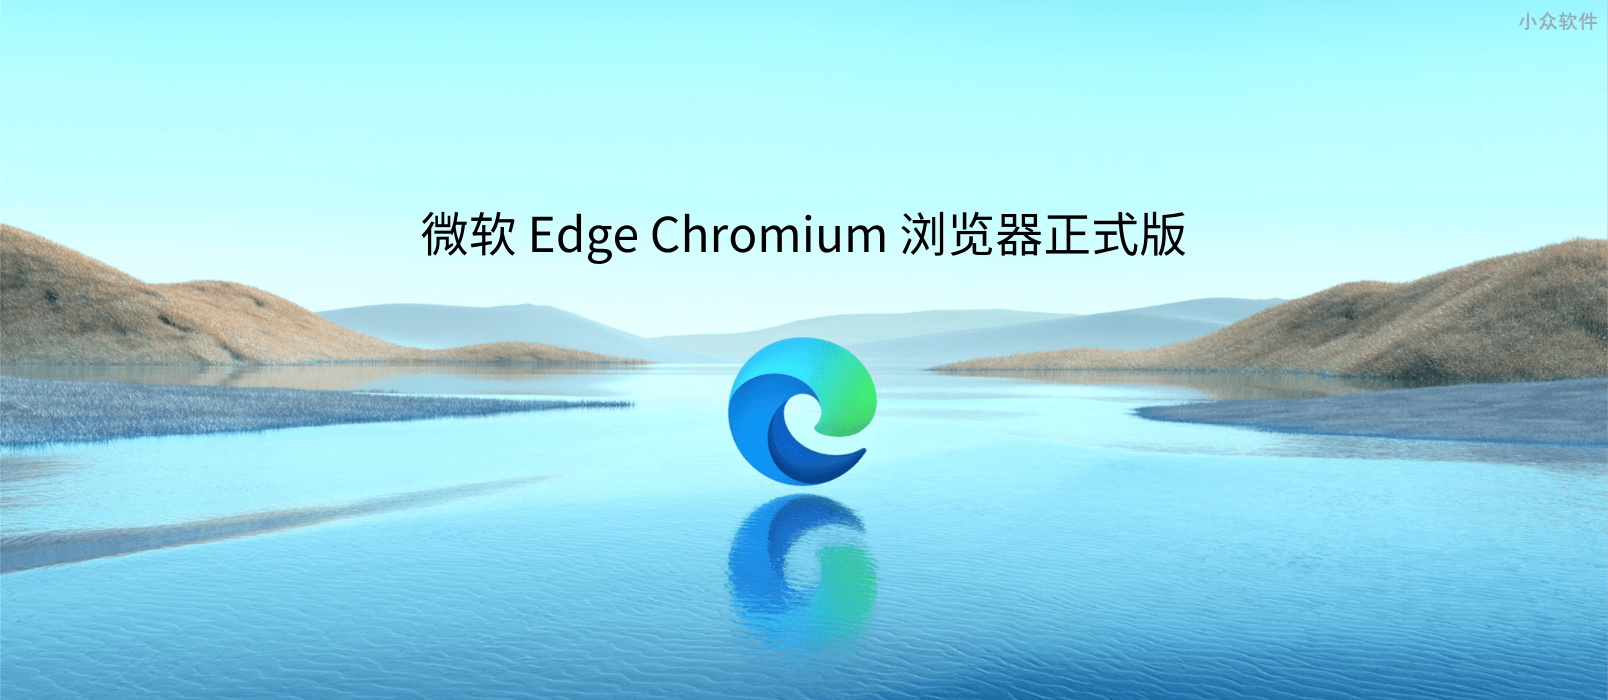 微软正式发布基于 Chromium 的浏览器 the New Microsoft Edge